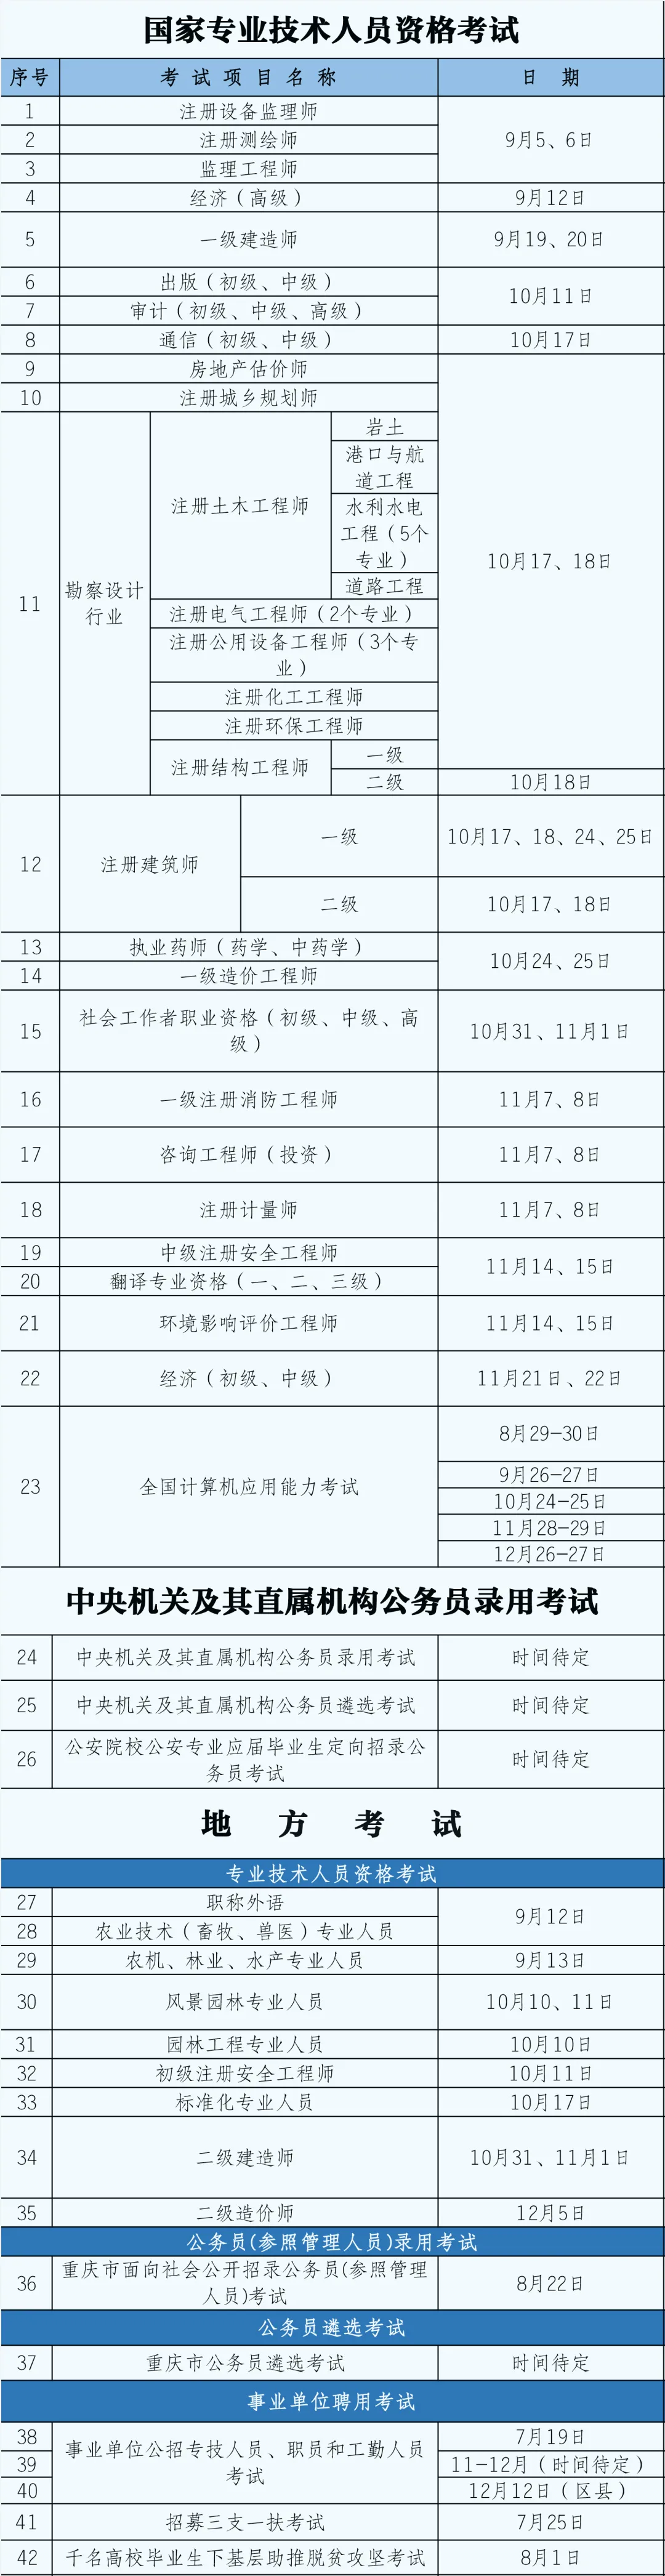 2020年度重庆市人事考试工作时间安排通知